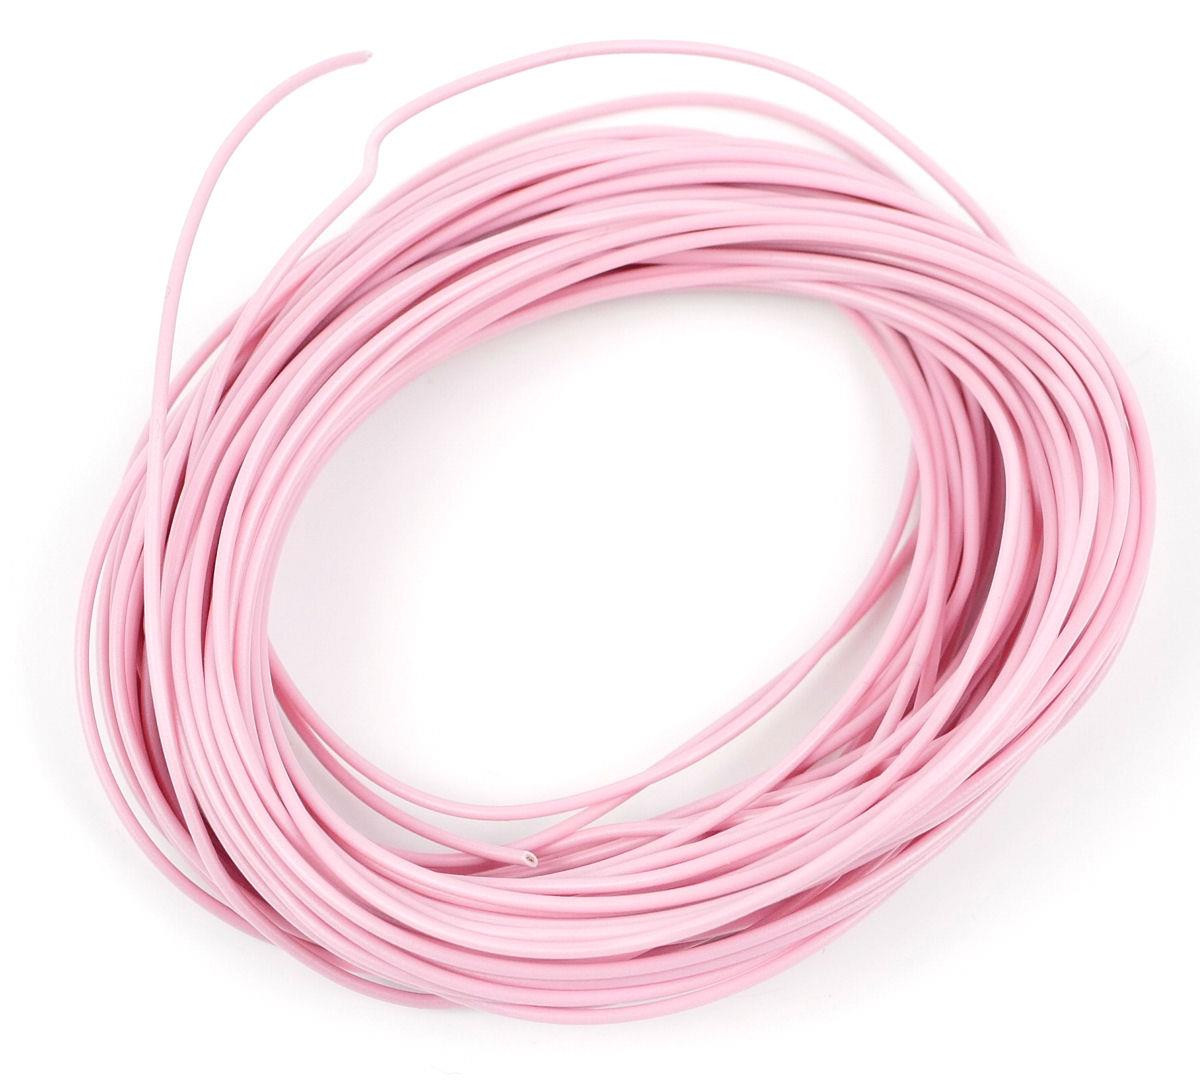 Pink Wire (7 x 0.2mm) 10m